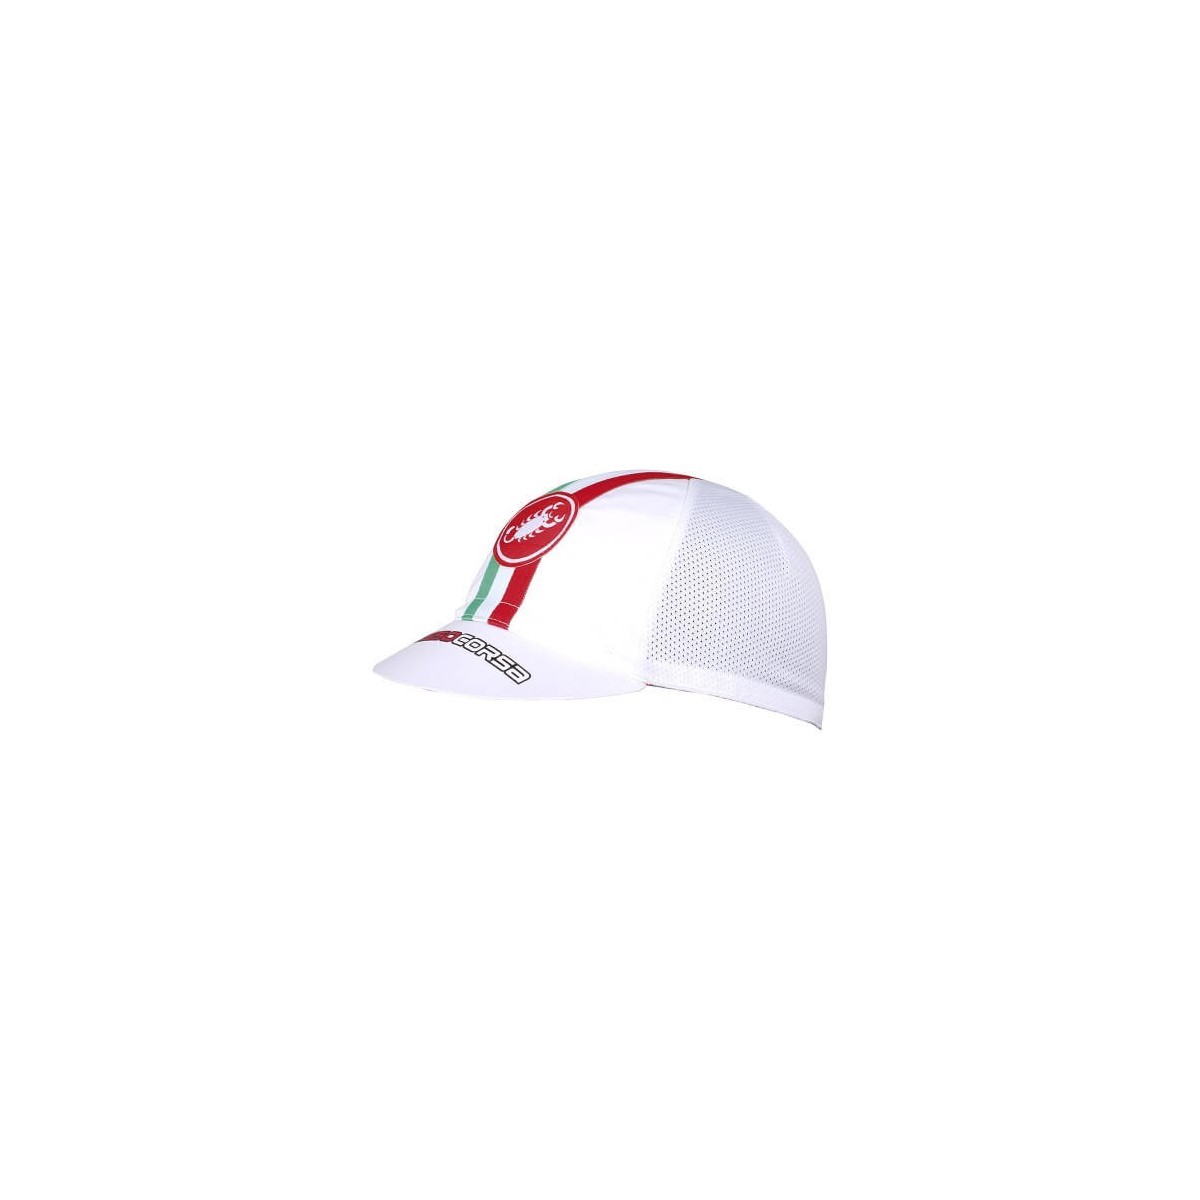 Best for günstig Kaufen-Castelli Performance White Cap. Castelli Performance White Cap <![CDATA[Es besteht aus einem hoch atmungsaktiven Material und eignet sich perfekt für einen lässigen Stil oder zum Tragen im Radsporttraining unter dem Helm.]]>. 